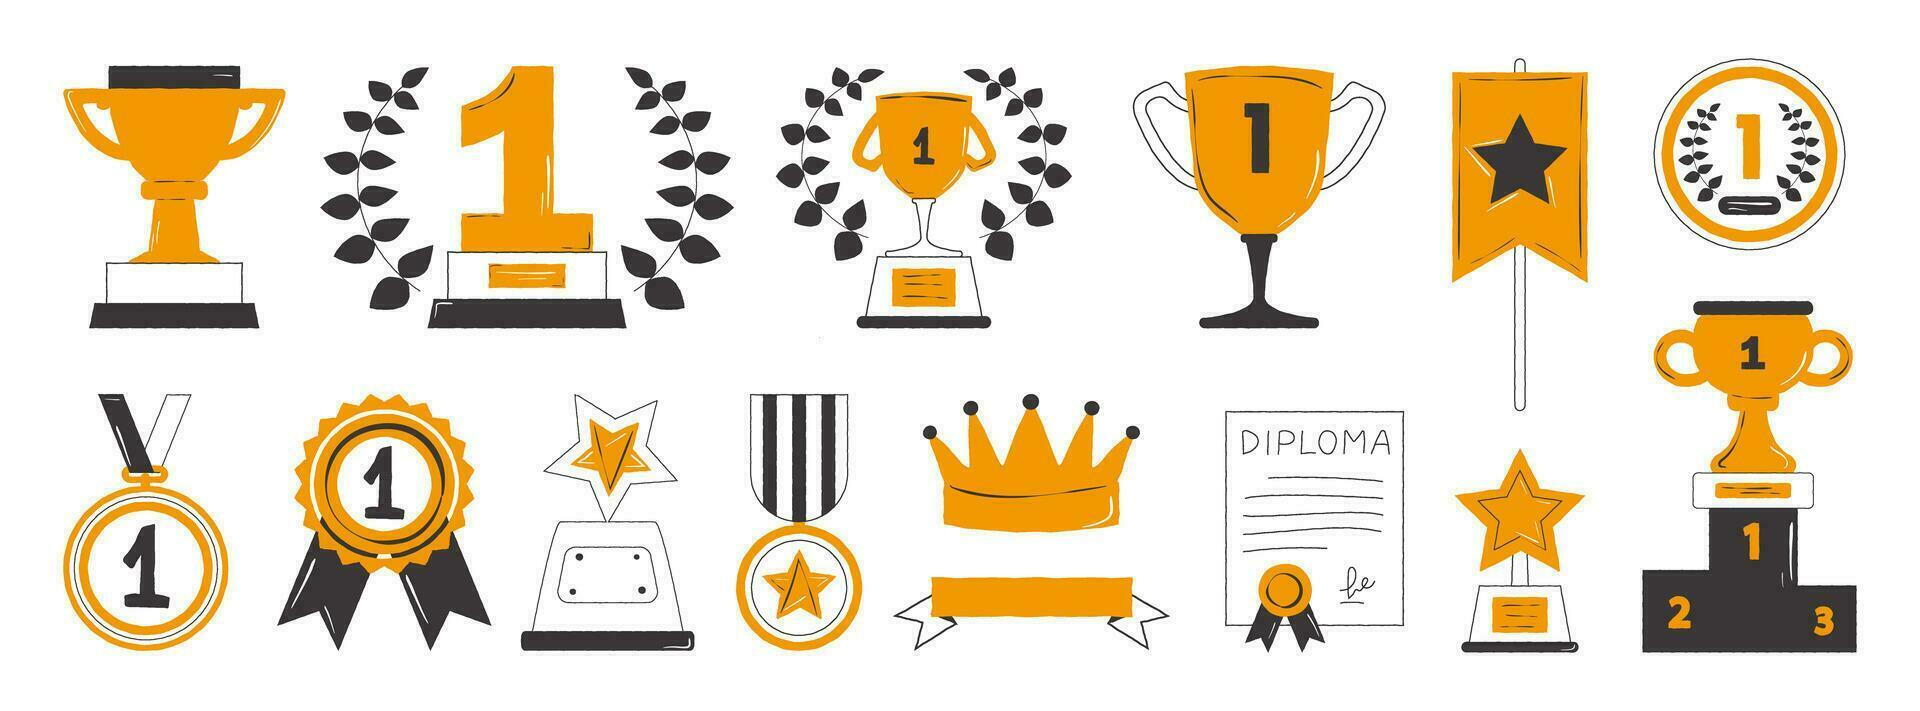 onderscheidingen, kopjes, medailles voor eerste plaatsen en een reeks van podium winnaars. zwart en oranje kleur, hand- getrokken prijs decoratief pictogrammen. vector illustratie in tekening stijl.